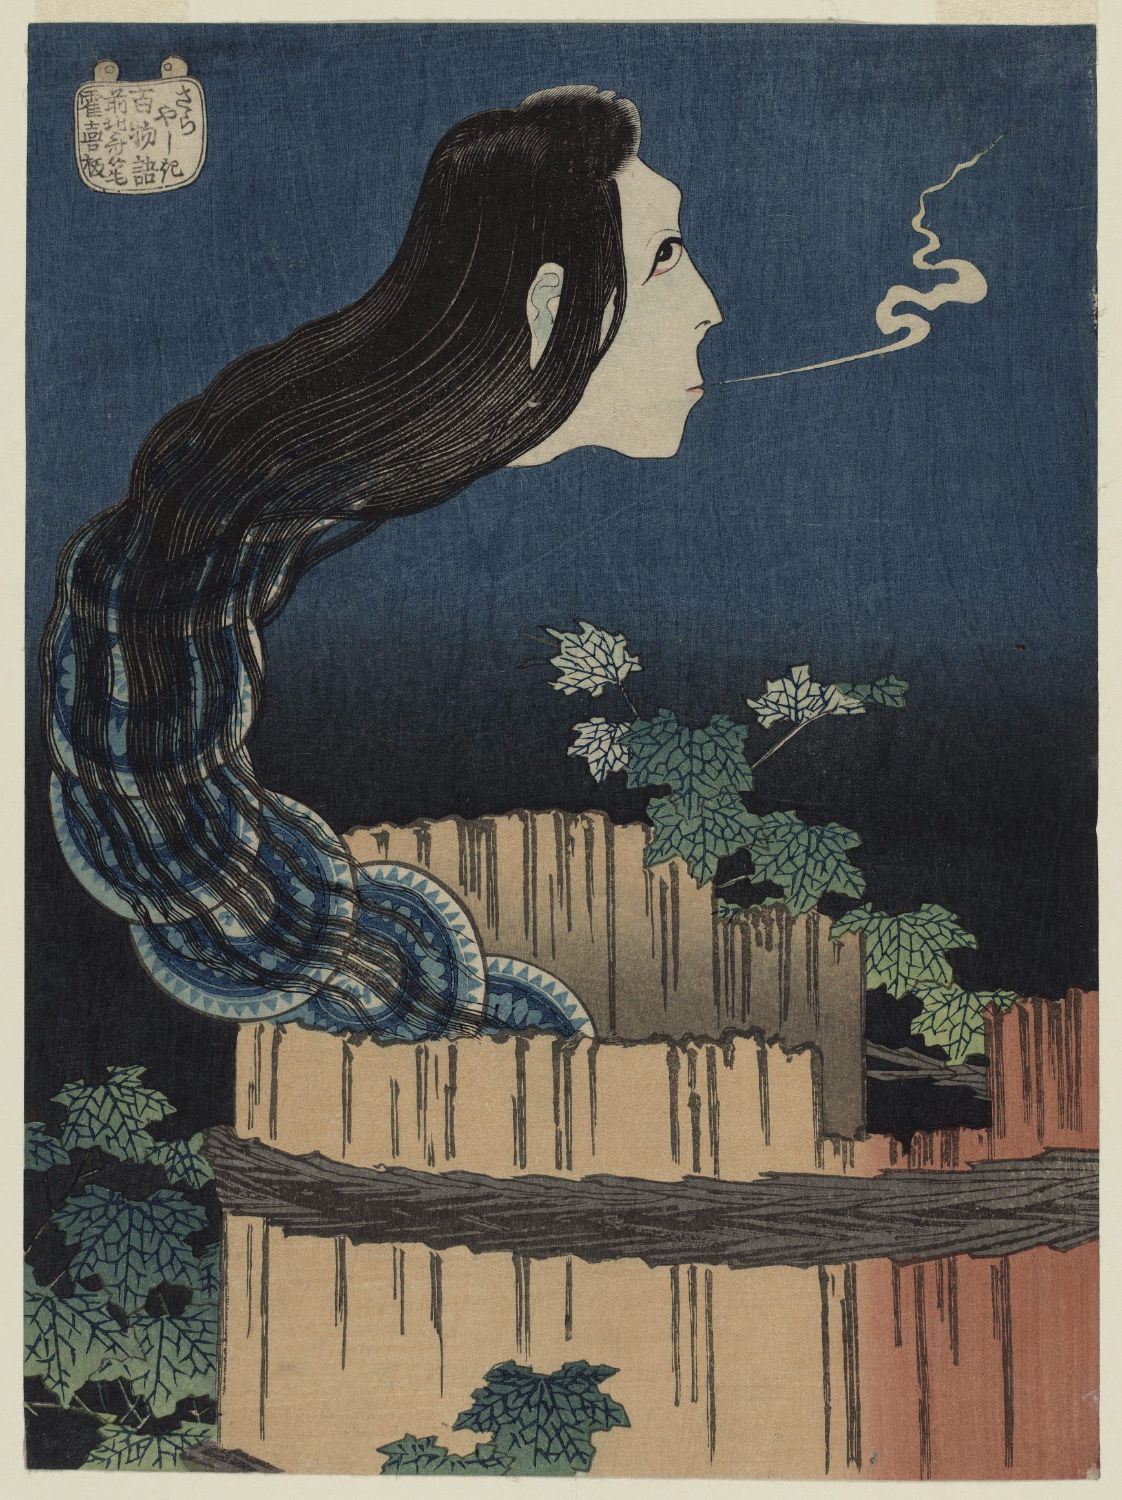 Η έπαυλη των πιάτων by Katsushika Hokusai - 1831/32 - 23,7 x 17,6 